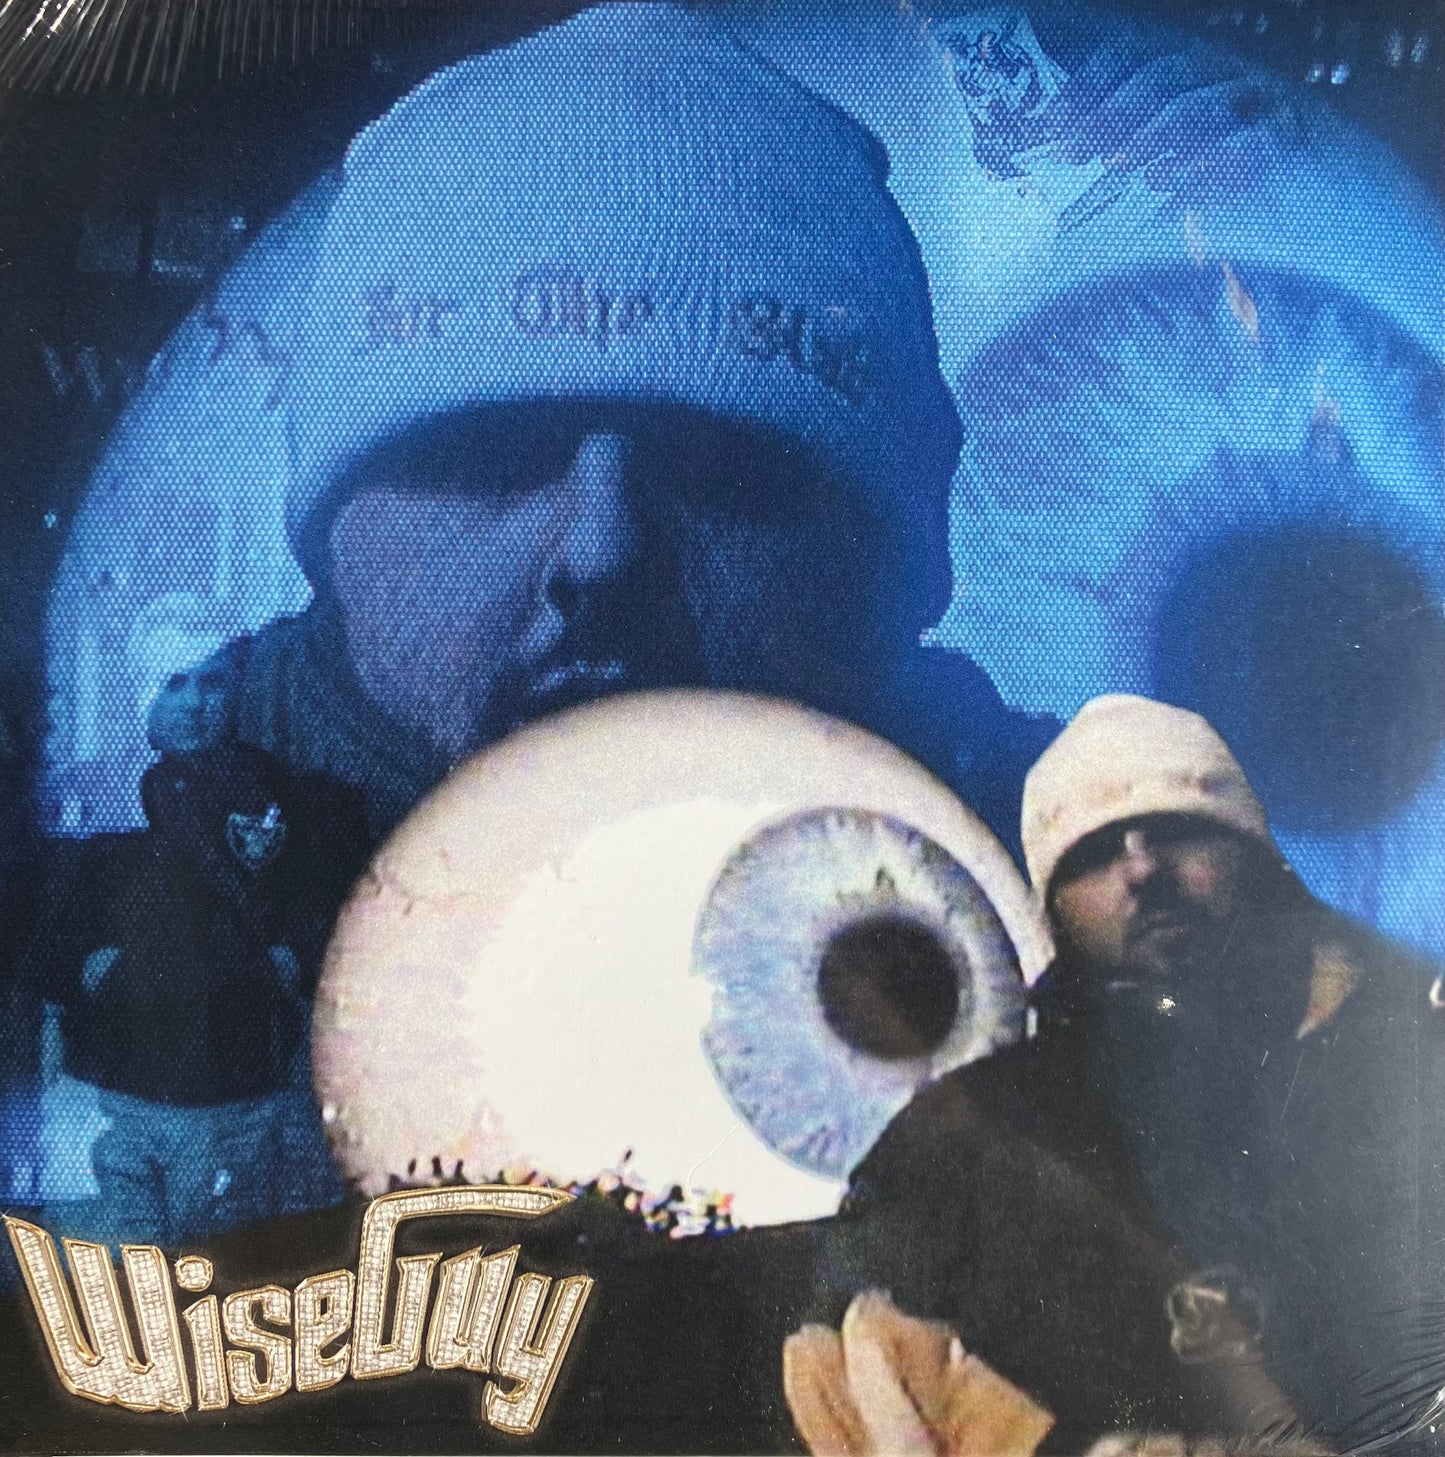 WiseGuy 12” Vinyl